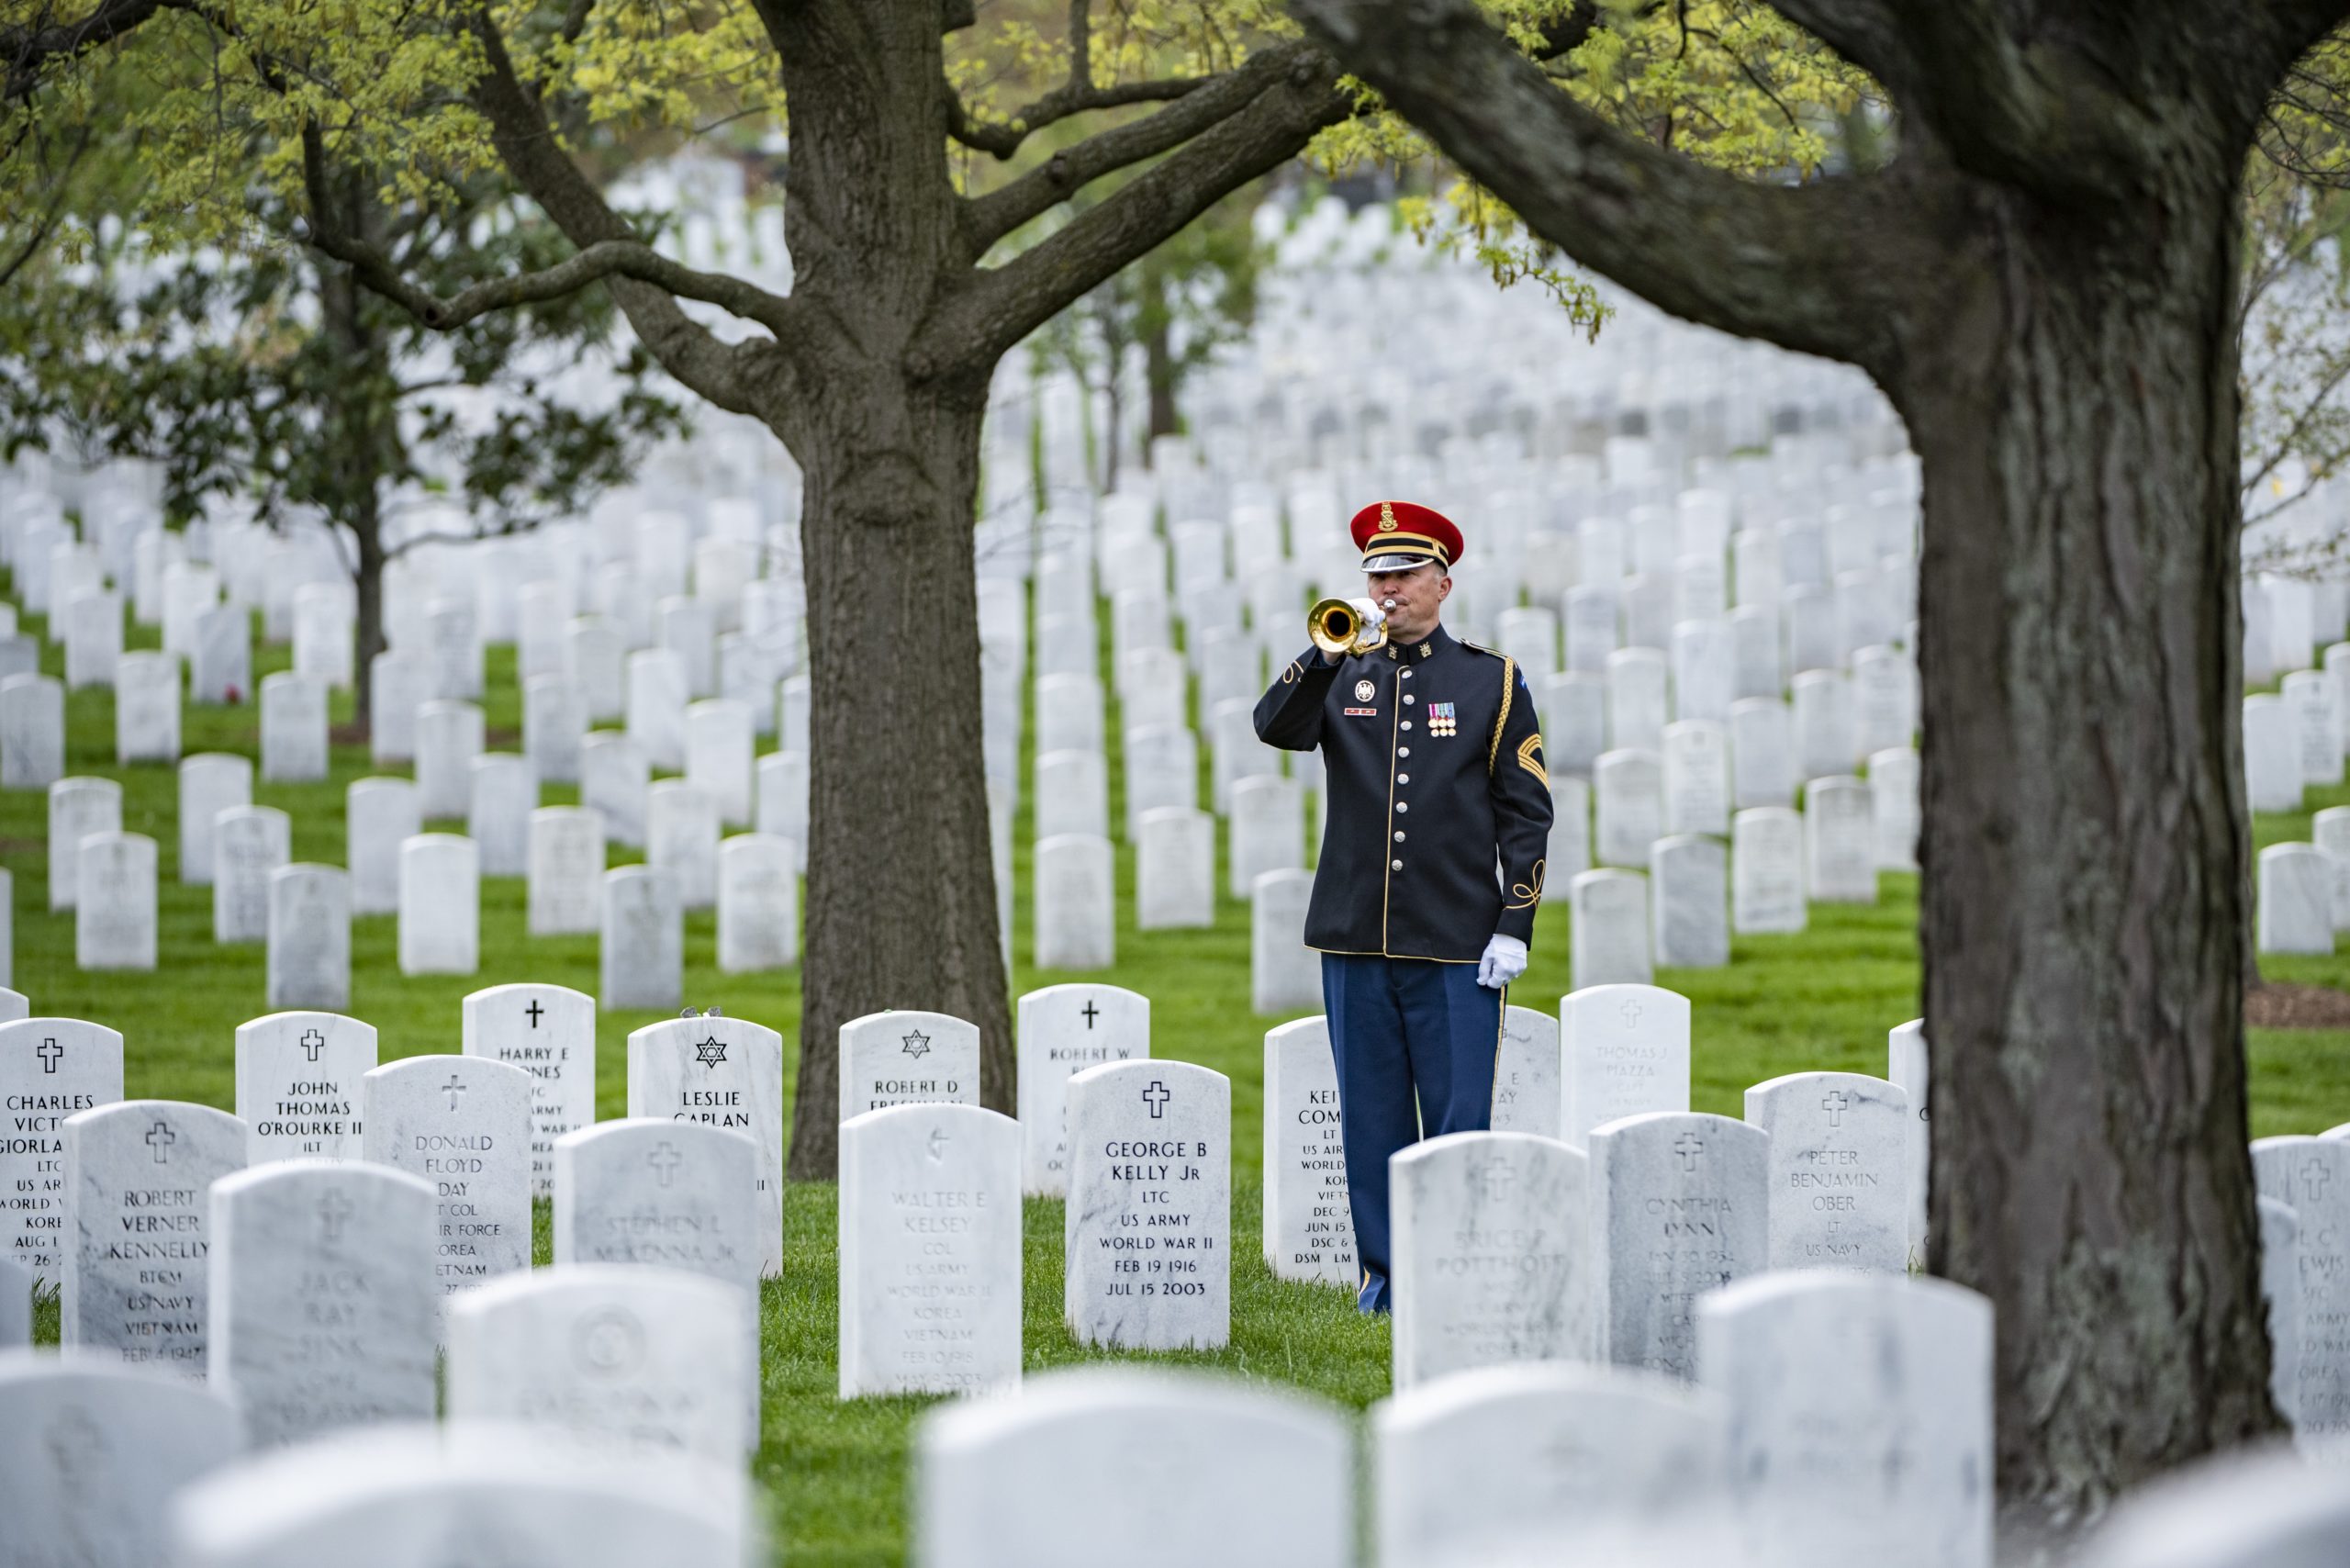 En soldat blåser i en trompet mellom hundrevis av hvite gravstener.